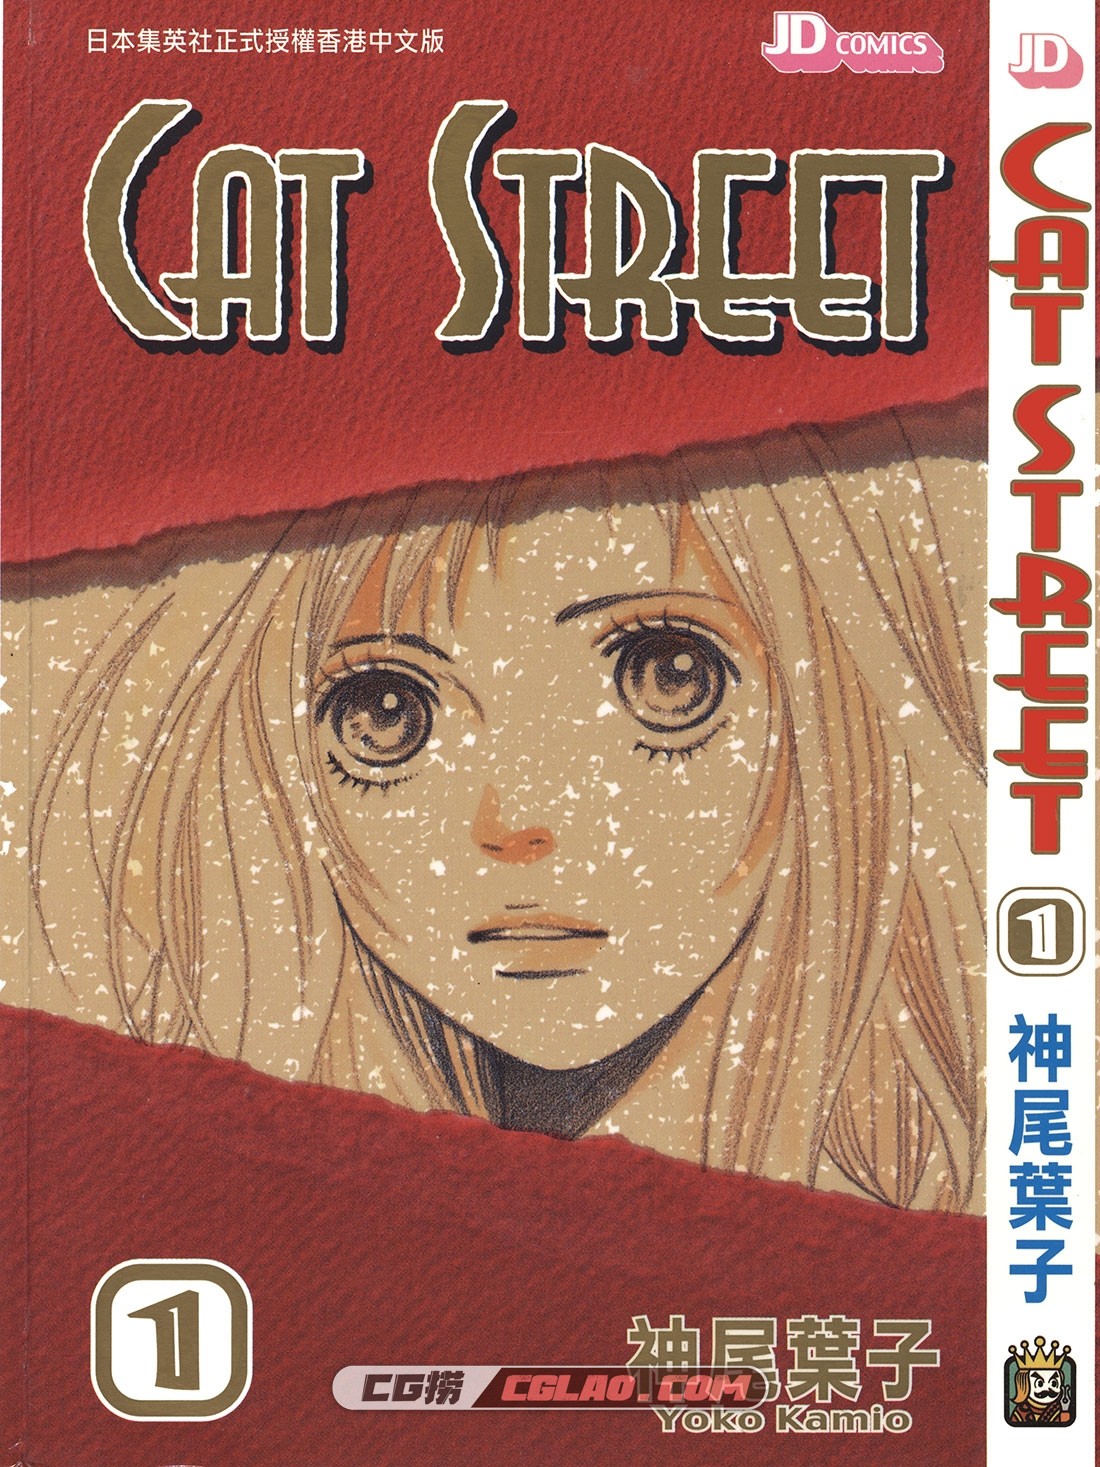 CAT STREET 神尾叶子 1-8全集完结 少女漫画下载网盘百度云,CS01_000.jpg